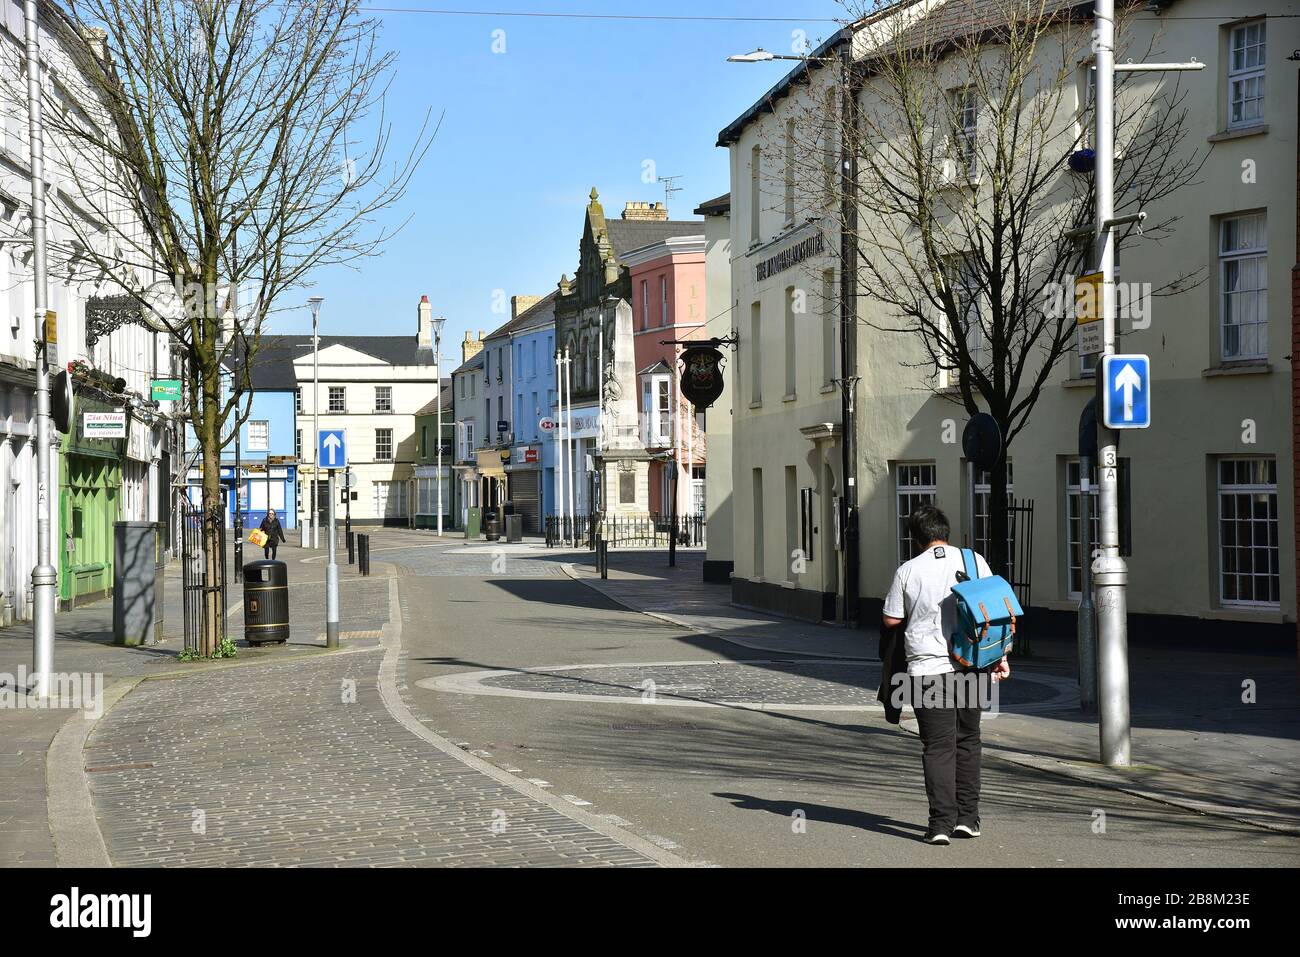 Des photos montrent le centre-ville de Bridgend au sud du Pays de Galles, au Royaume-Uni, pendant la pandémie de coronavirus. Les boutiques des rues hautes restent fermées à partir d'une instruction gouvernementale Banque D'Images